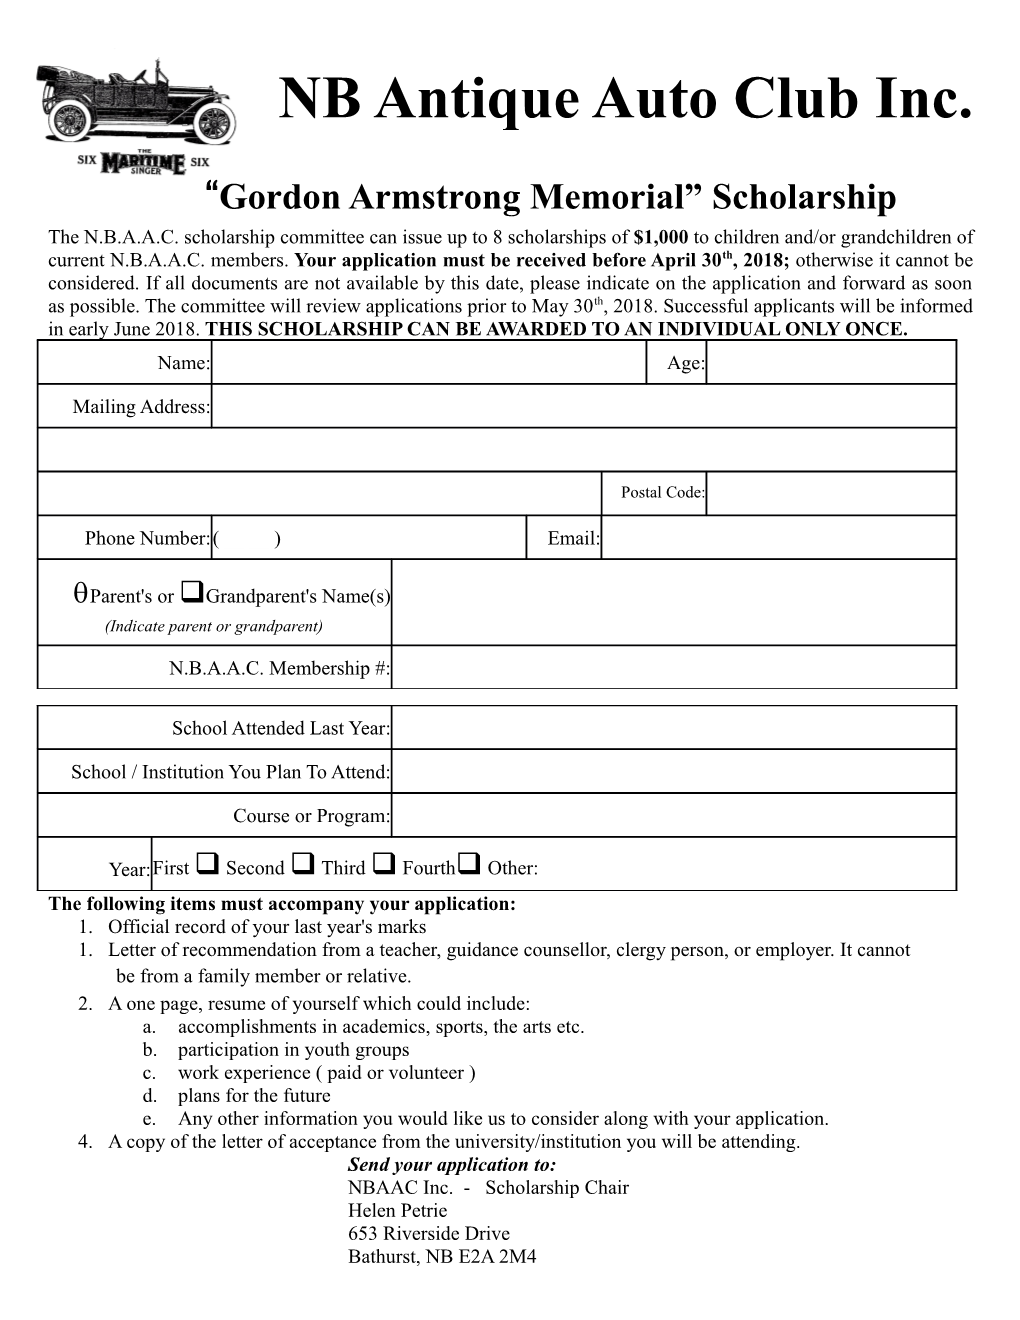 Gordon Armstrong Memorial Scholarship